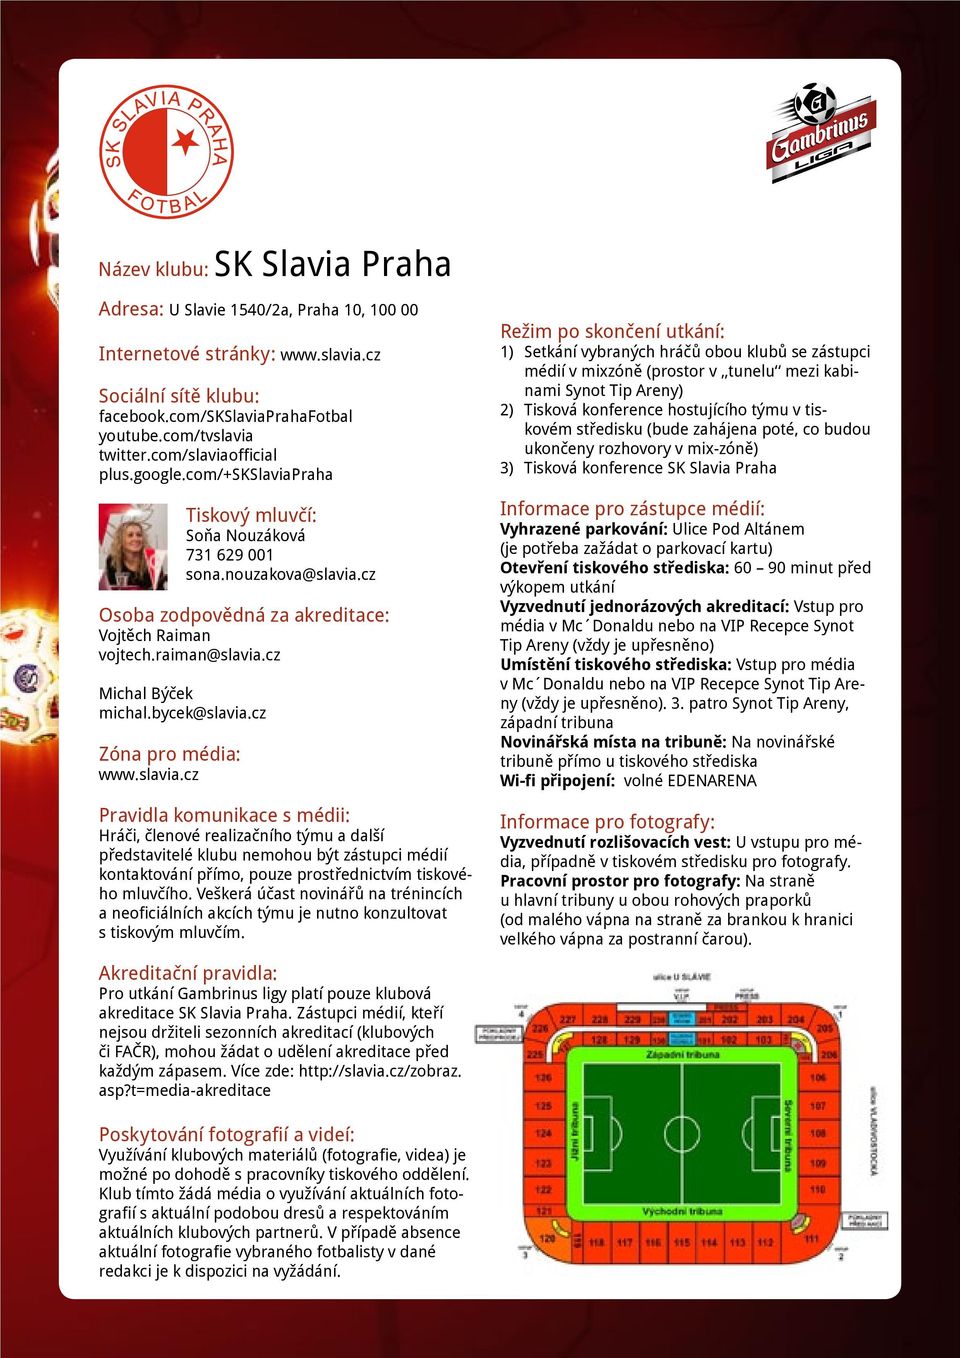 Veškerá účast novinářů na trénincích a neoficiálních akcích týmu je nutno konzultovat s tiskovým mluvčím. Pro utkání Gambrinus ligy platí pouze klubová akreditace SK Slavia Praha.